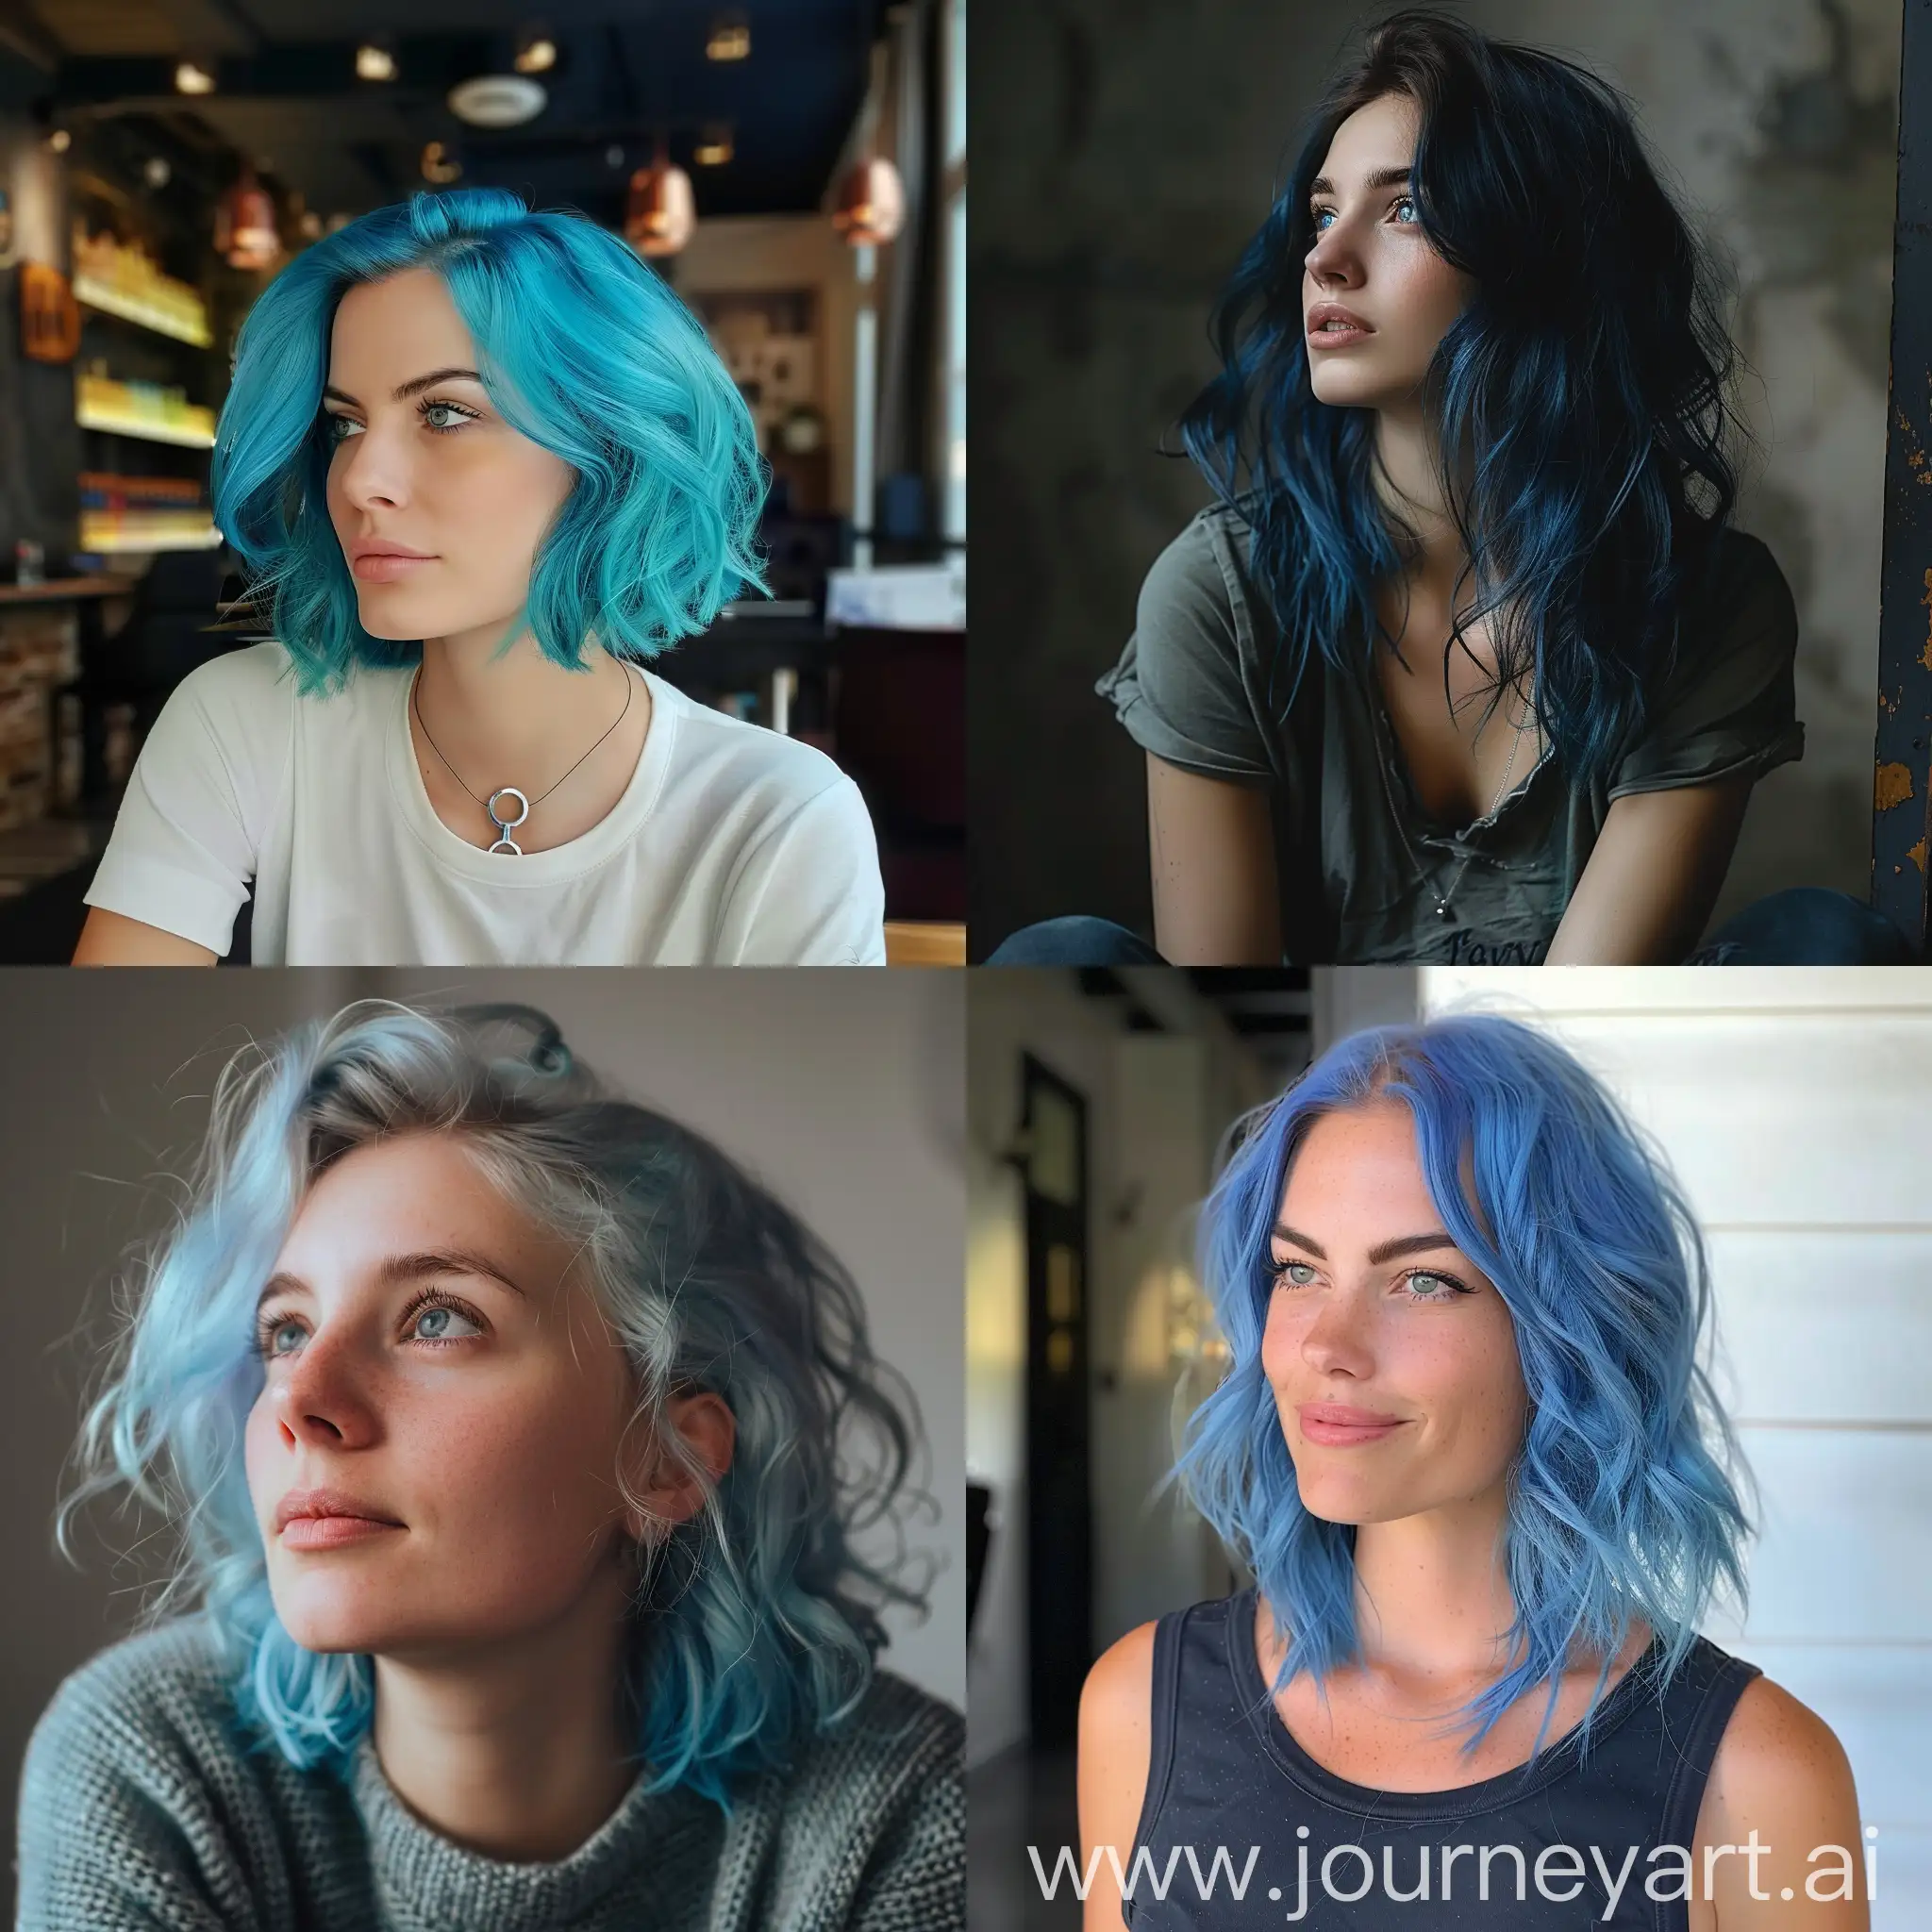 bleu hair waiting woman